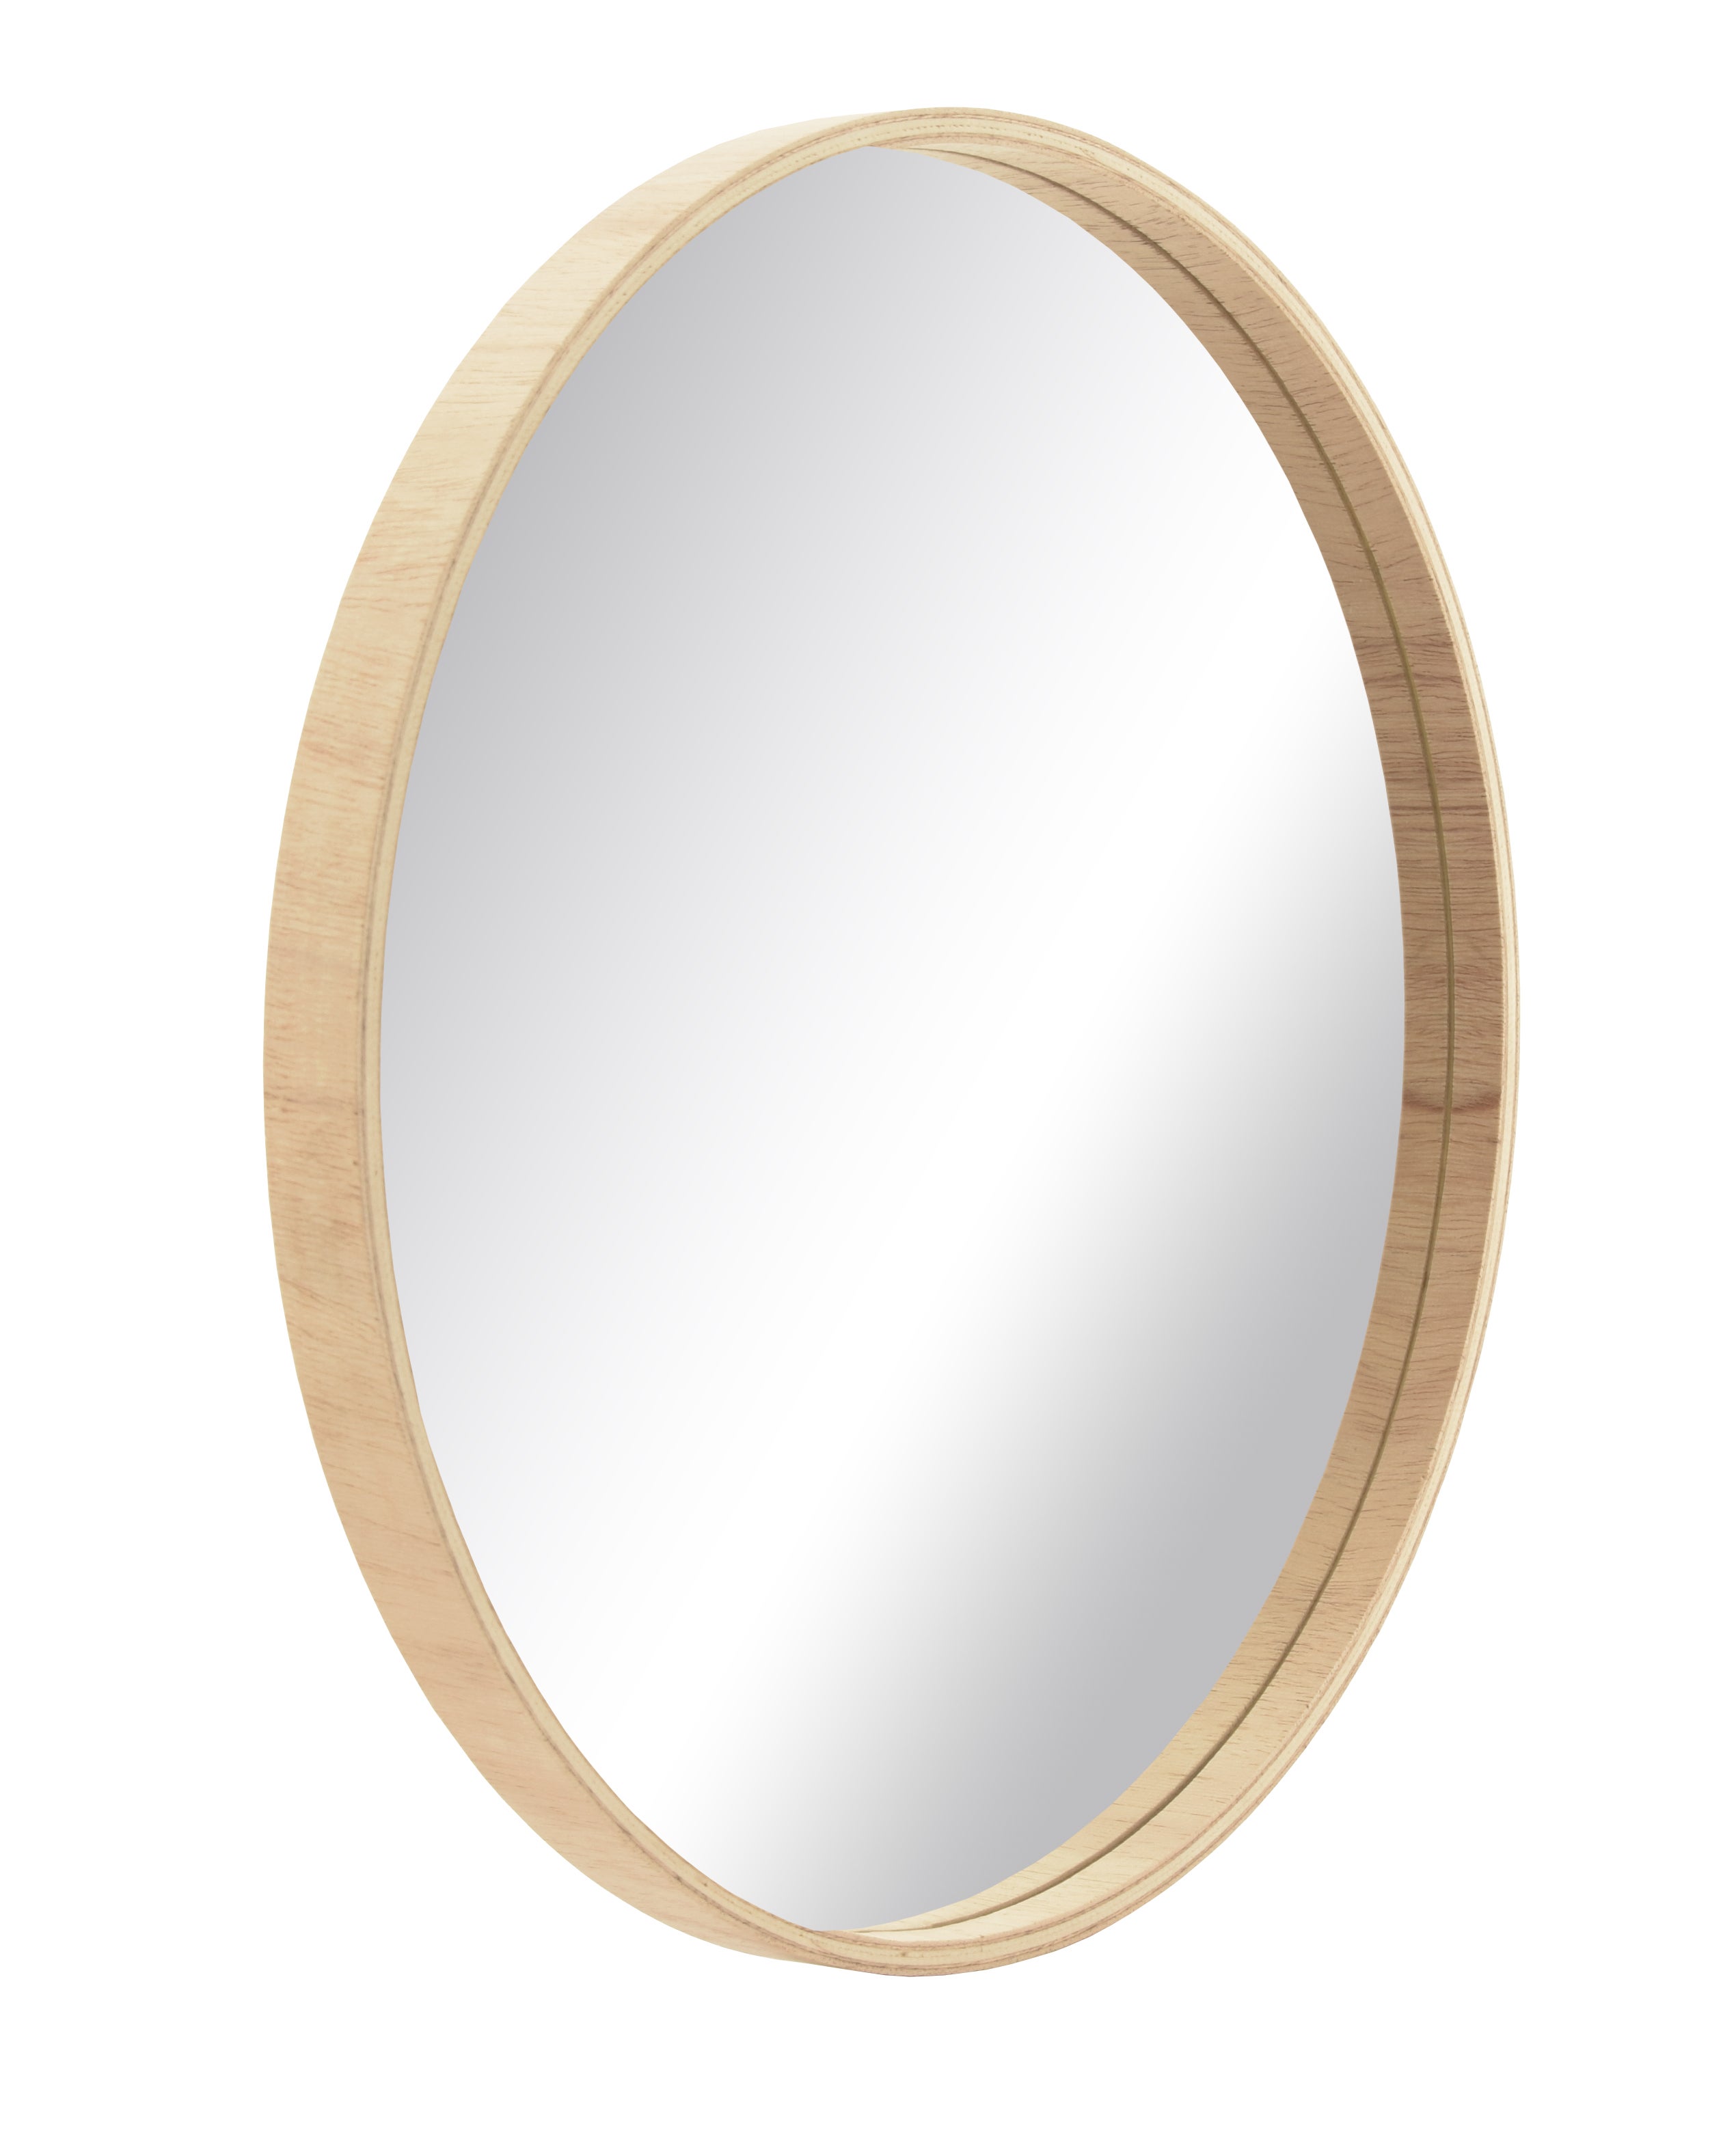 Espejo redondo Enria 70 cm de diametro h15